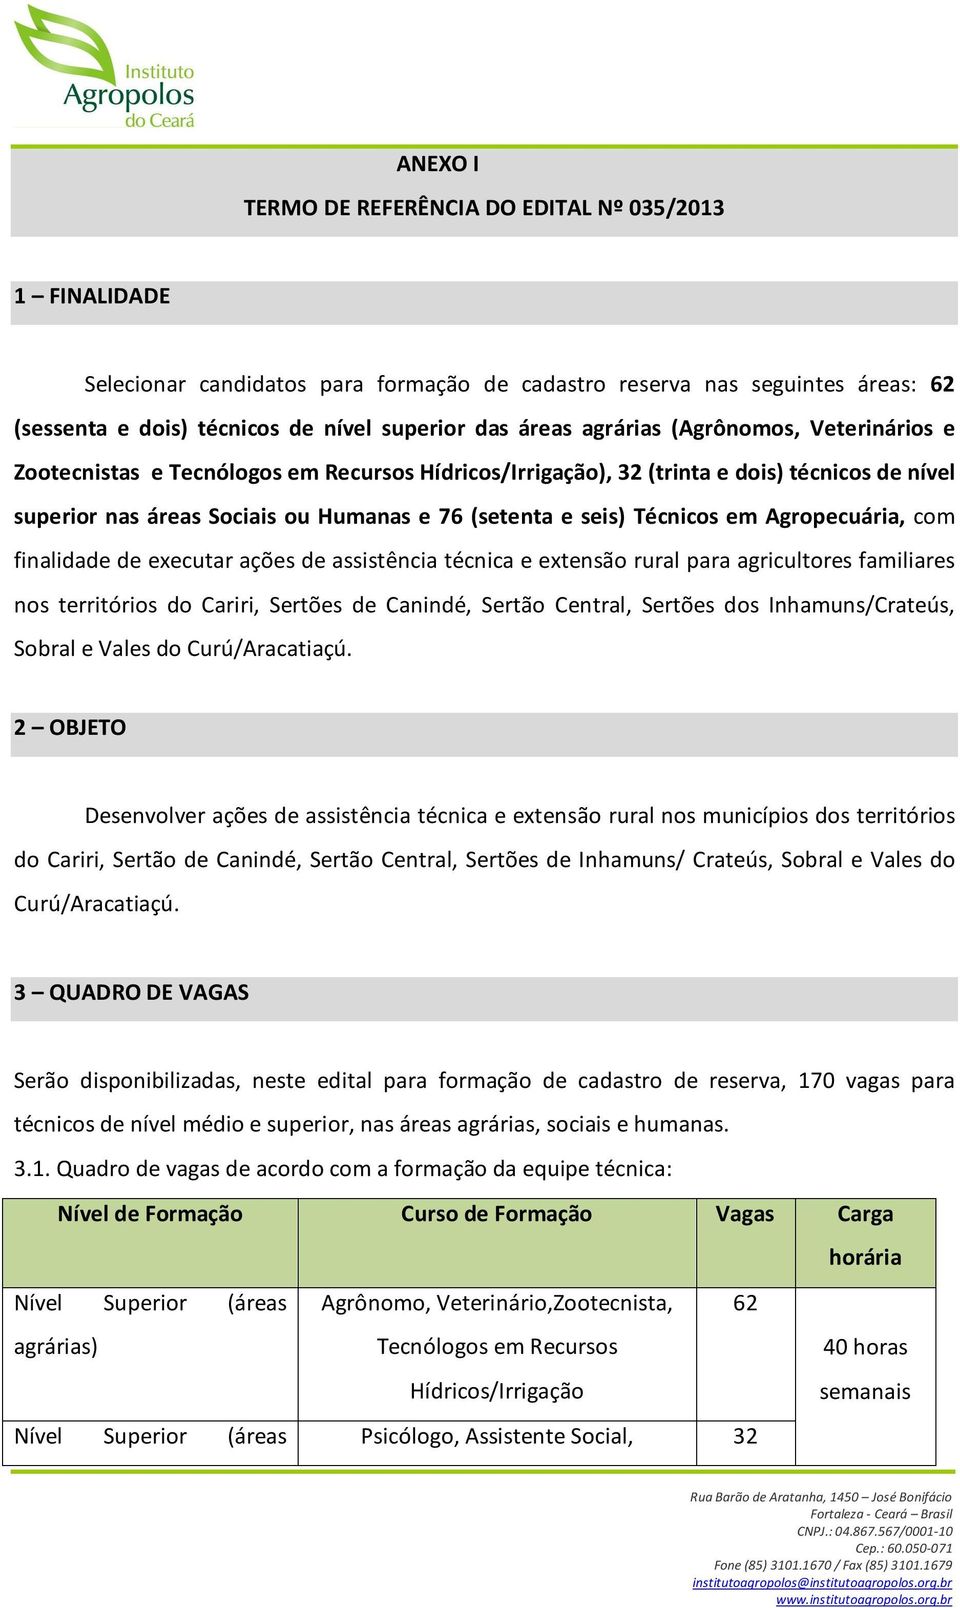 Técnicos em Agropecuária, com finalidade de executar ações de assistência técnica e extensão rural para agricultores familiares nos territórios do Cariri, Sertões de Canindé, Sertão Central, Sertões